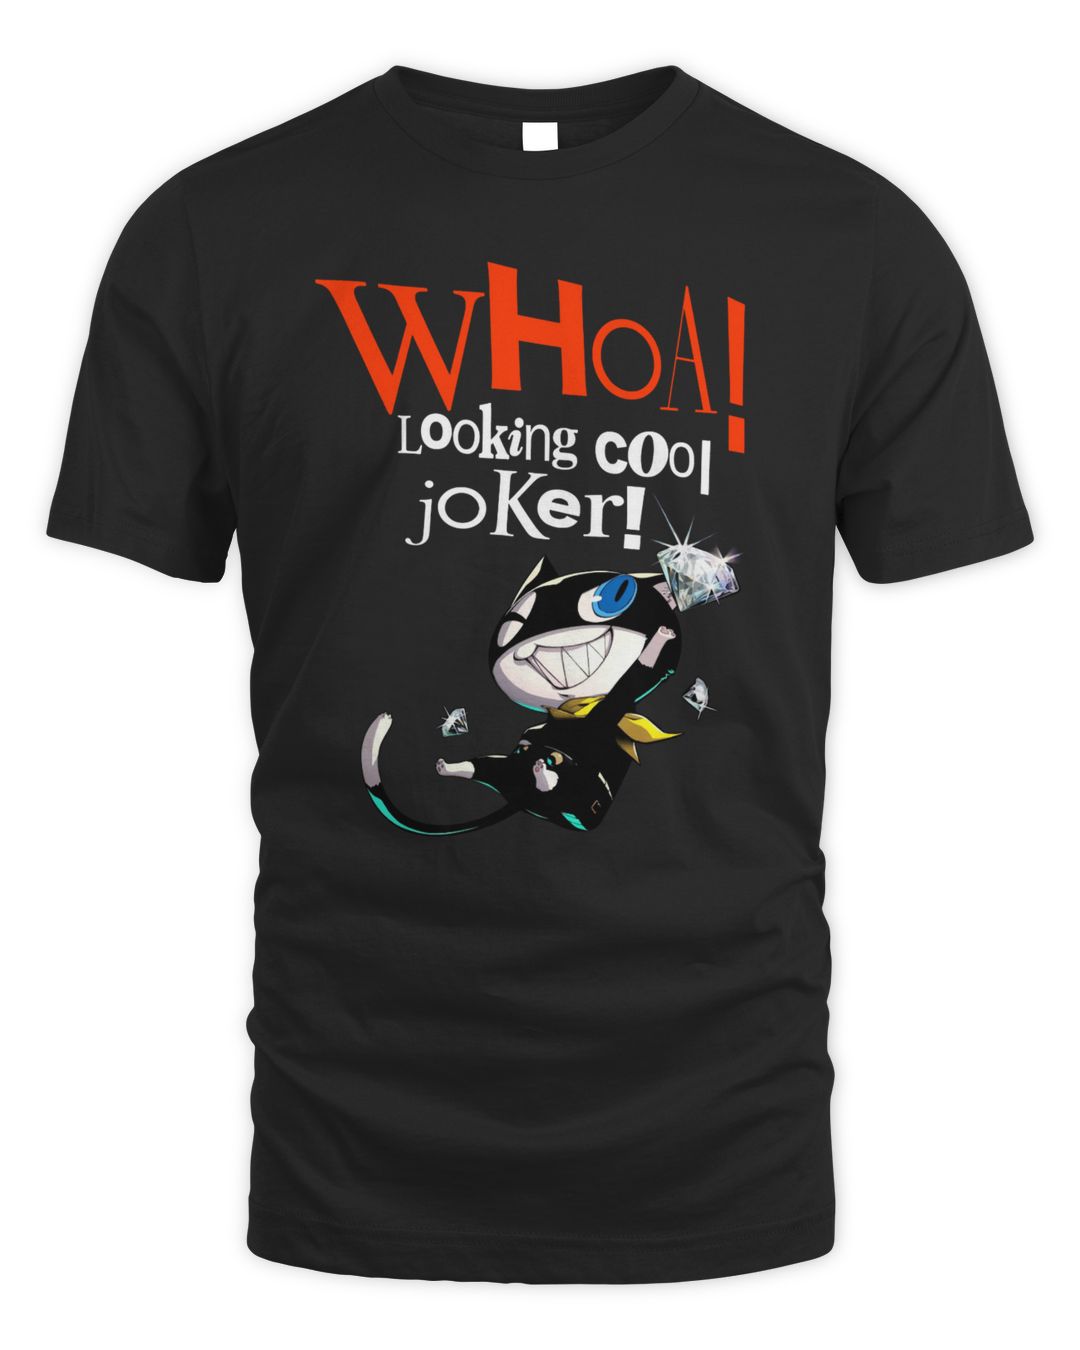 Persona 5 Merch Looking Cool Joker Shirt